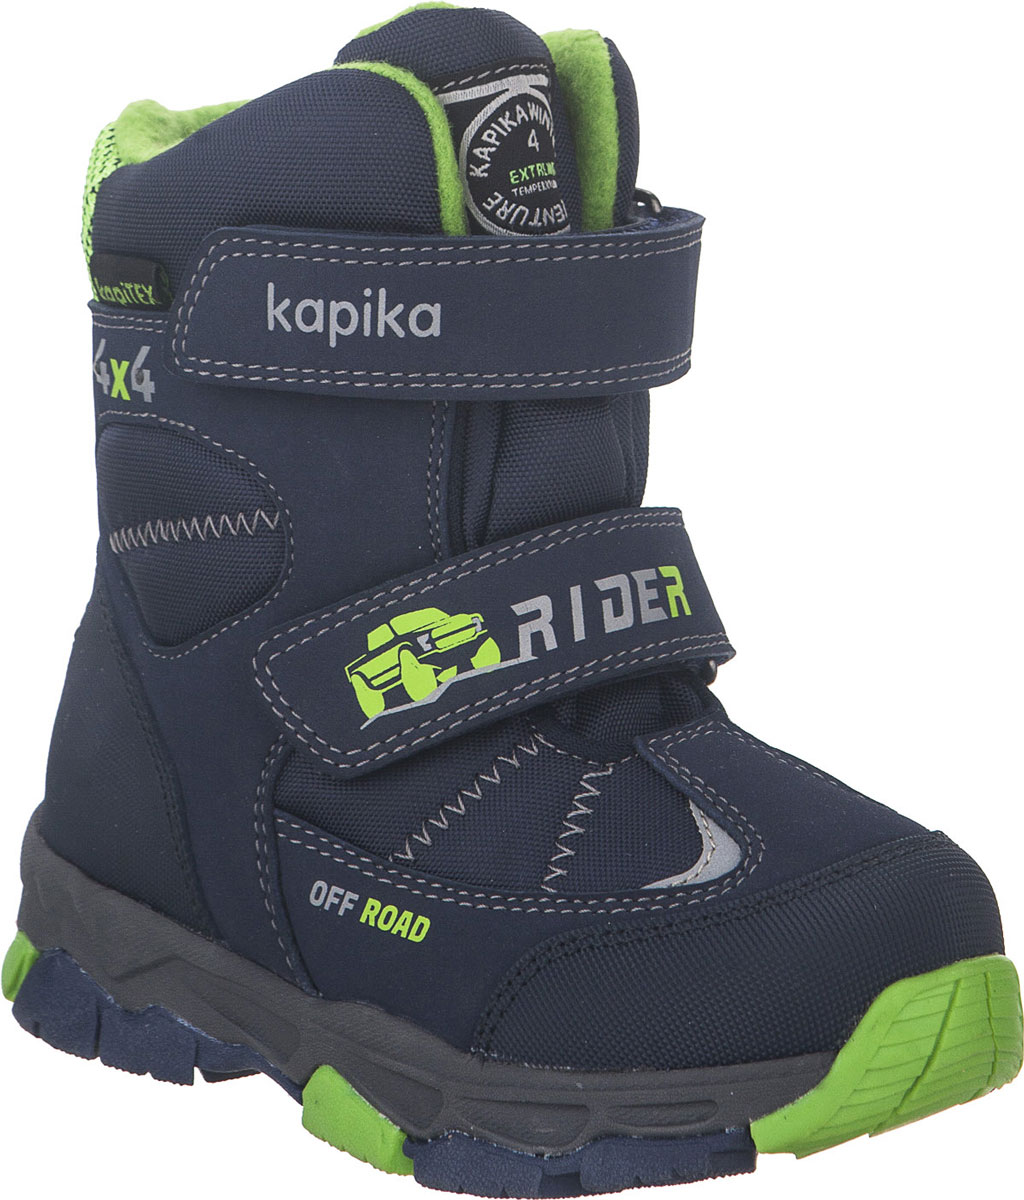 Ботинки для мальчика Kapika, цвет: темно-синий, салатовый. 42215-2. Размер 28